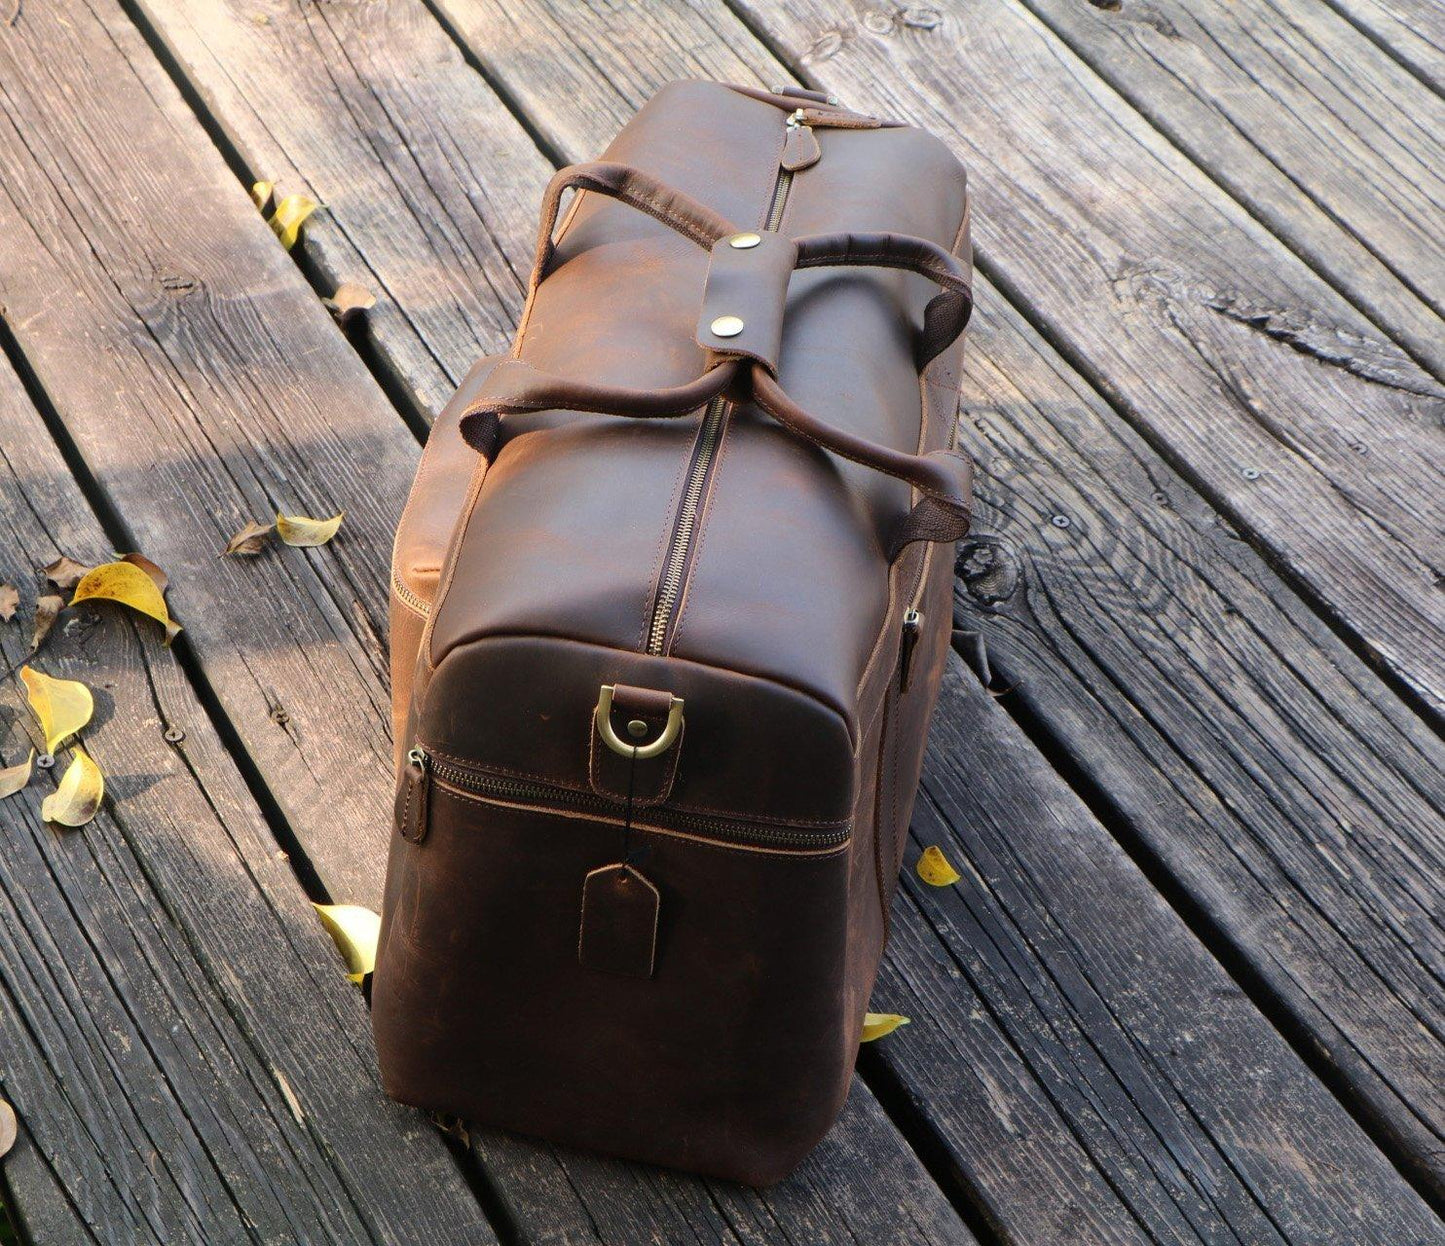 23'' Cowhide Leather Weekender Bag for Men